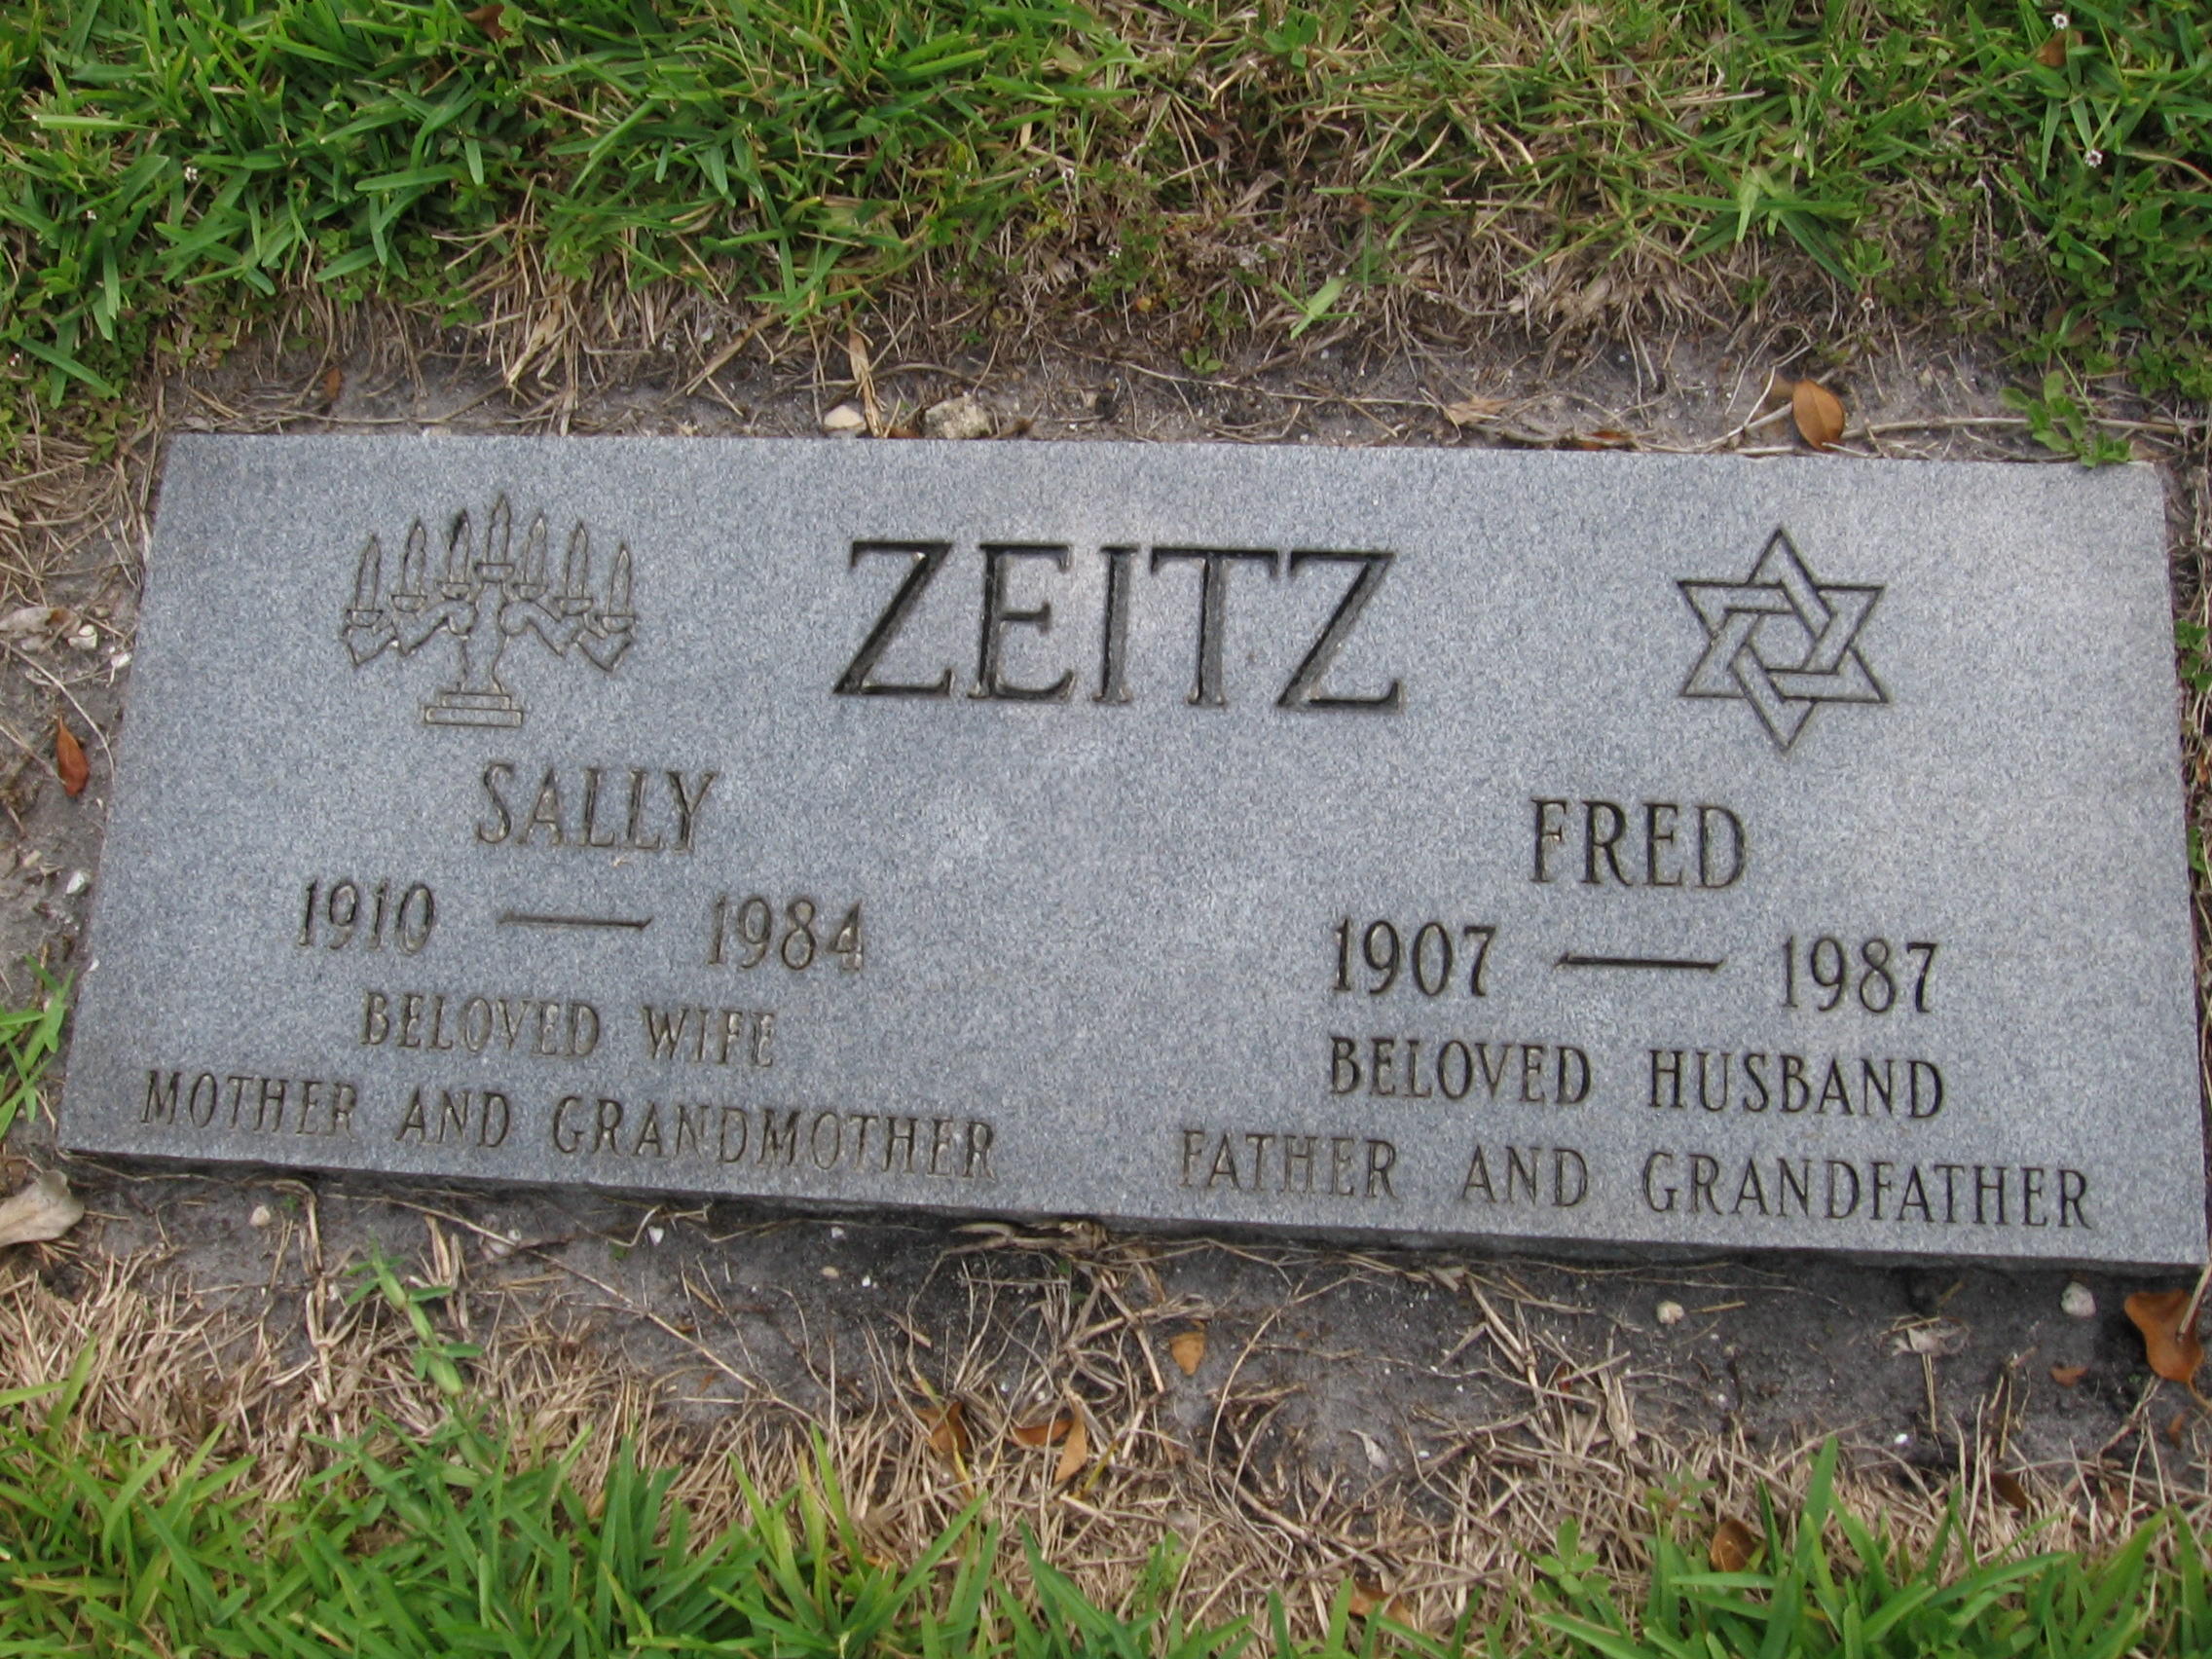 Sally Zeitz